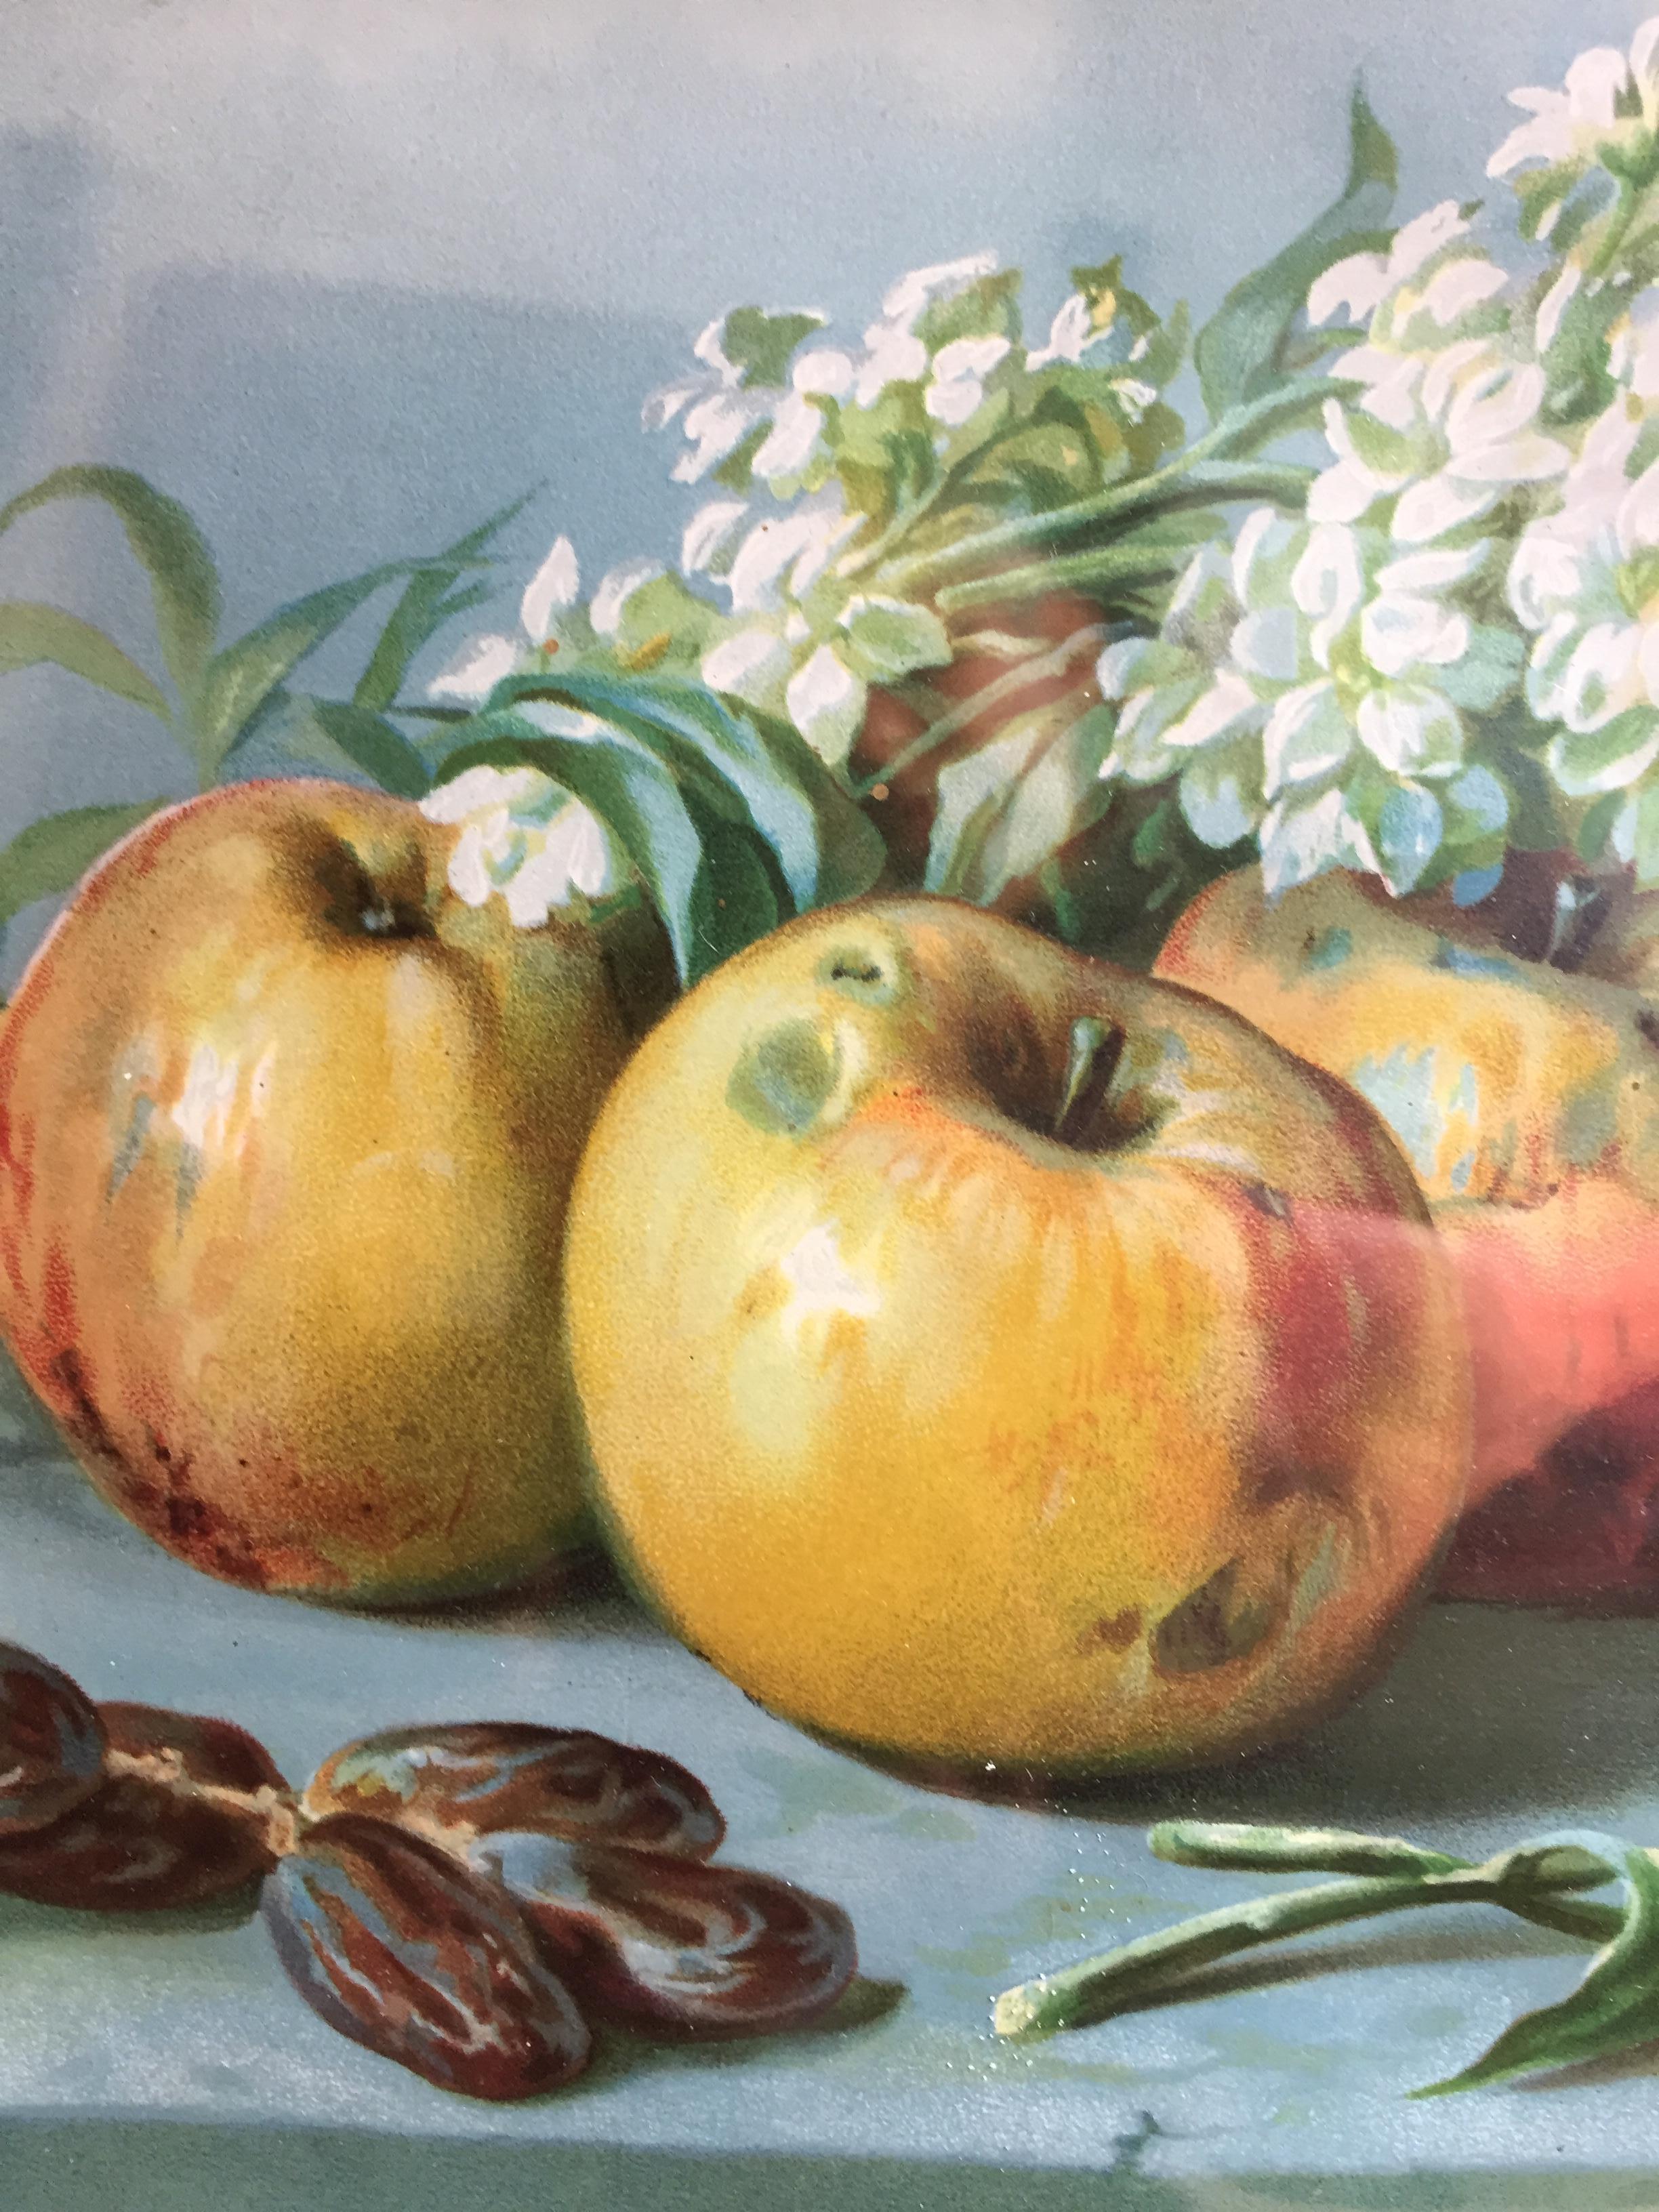 Italienische Lithografie des frühen 20. Jahrhunderts, handkoloriert von Giuseppe Falchetti, zeigt ein Obst- und Blumenstillleben, horizontal gerahmt, Äpfel, Birnen und weiße Blumen sind auf einem Tisch mit hellblauem Hintergrund angeordnet. In einem